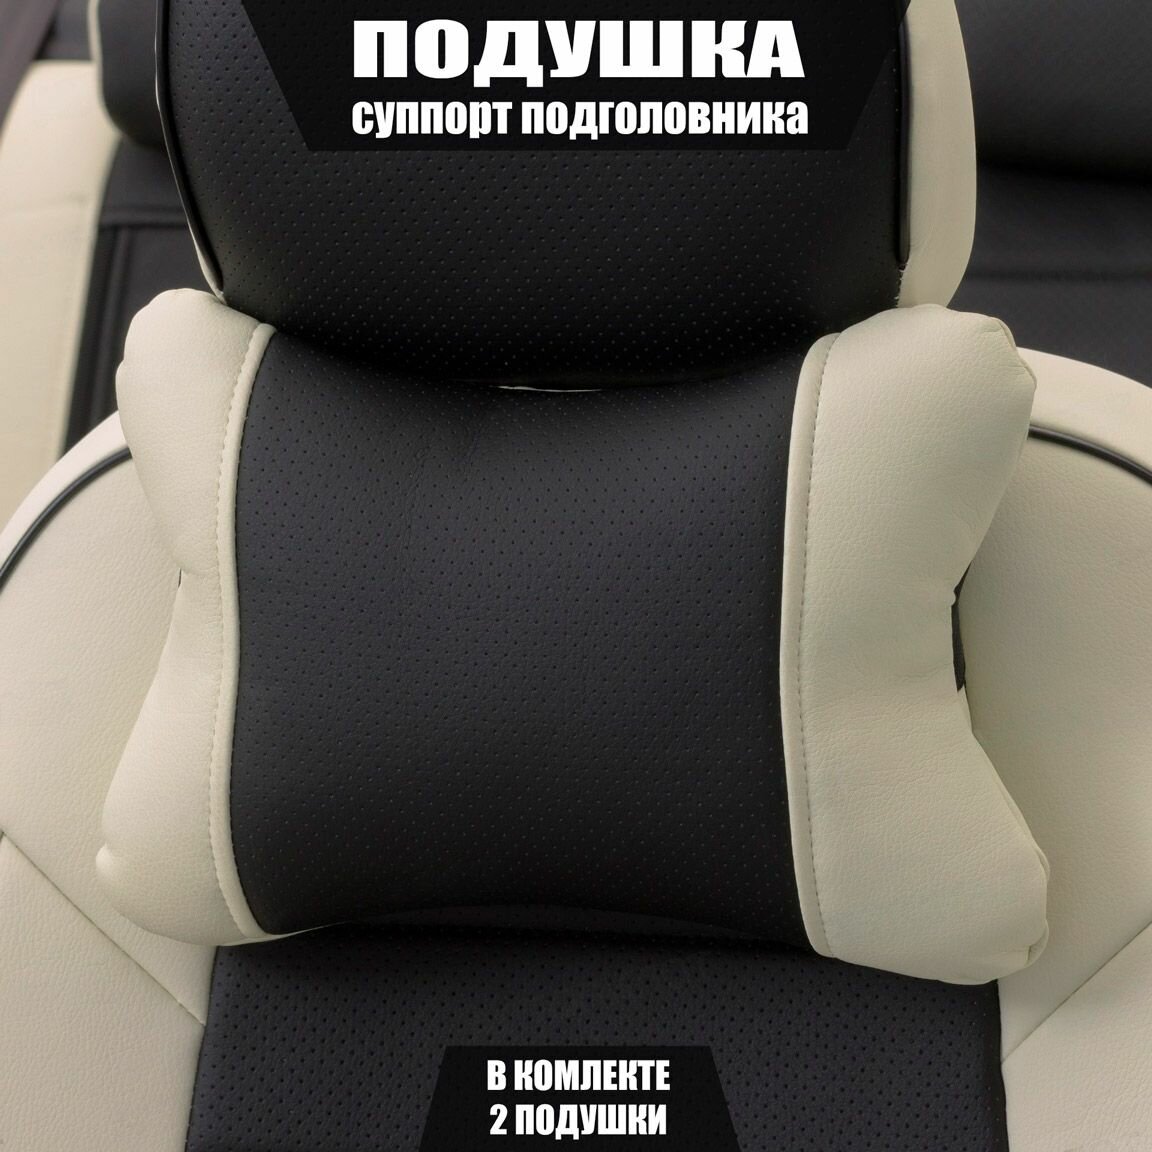 Подушки под шею (суппорт подголовника) для БМВ М5 (2011 - 2013) седан / BMW M5, Экокожа, 2 подушки, Белый и черный